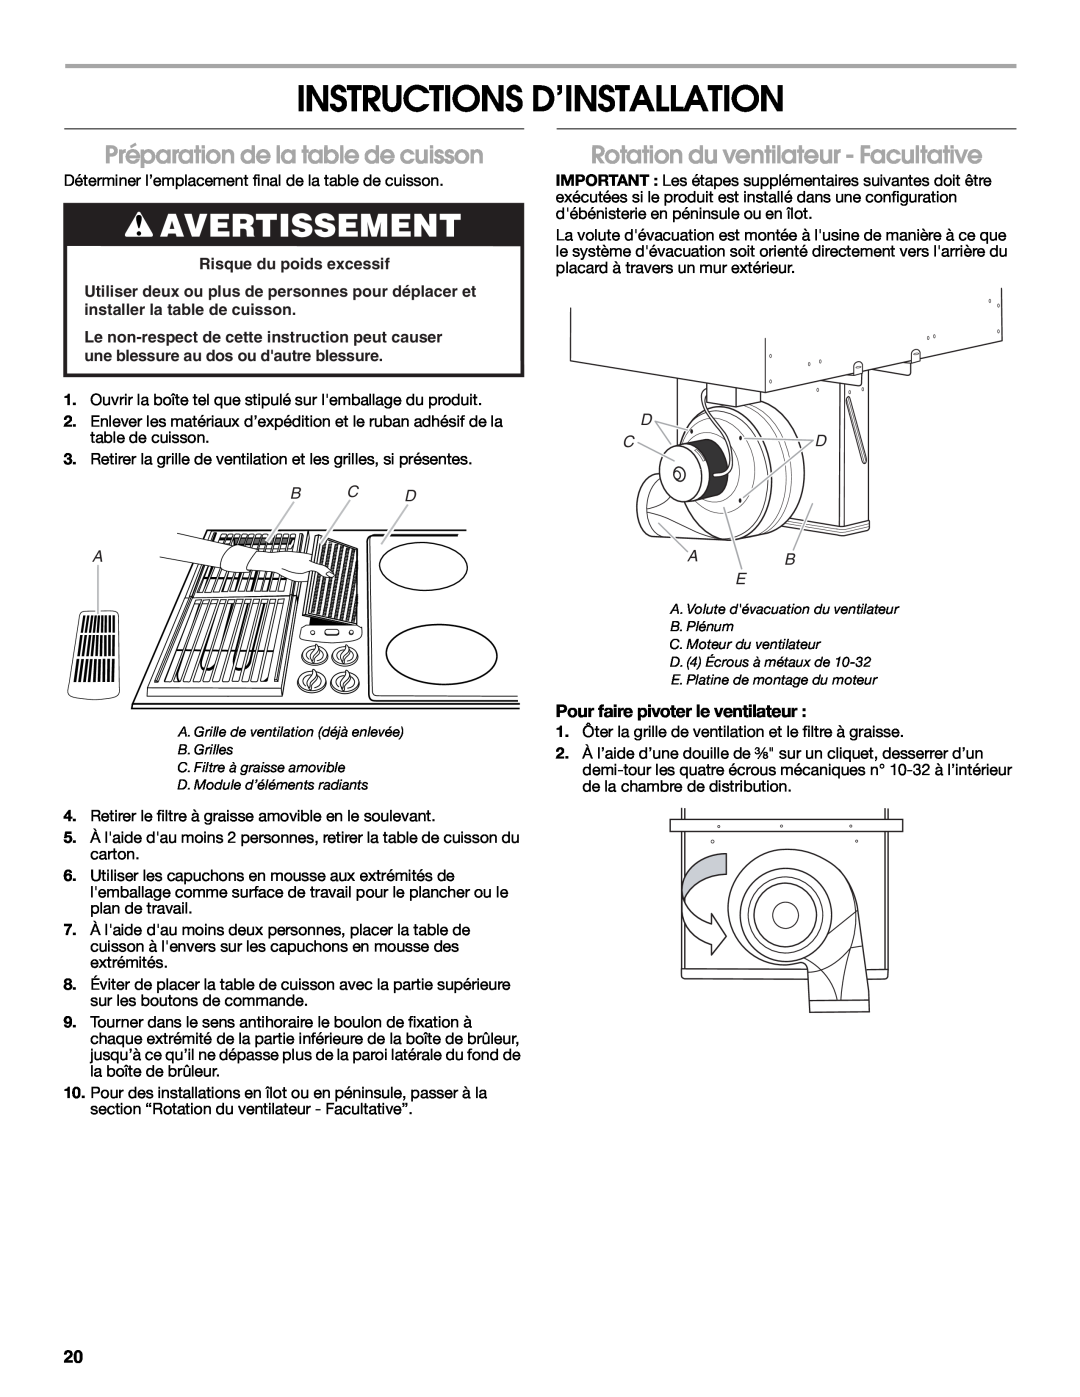 Jenn-Air W10298937A Instructions D’Installation, Préparation de la table de cuisson, Rotation du ventilateur - Facultative 